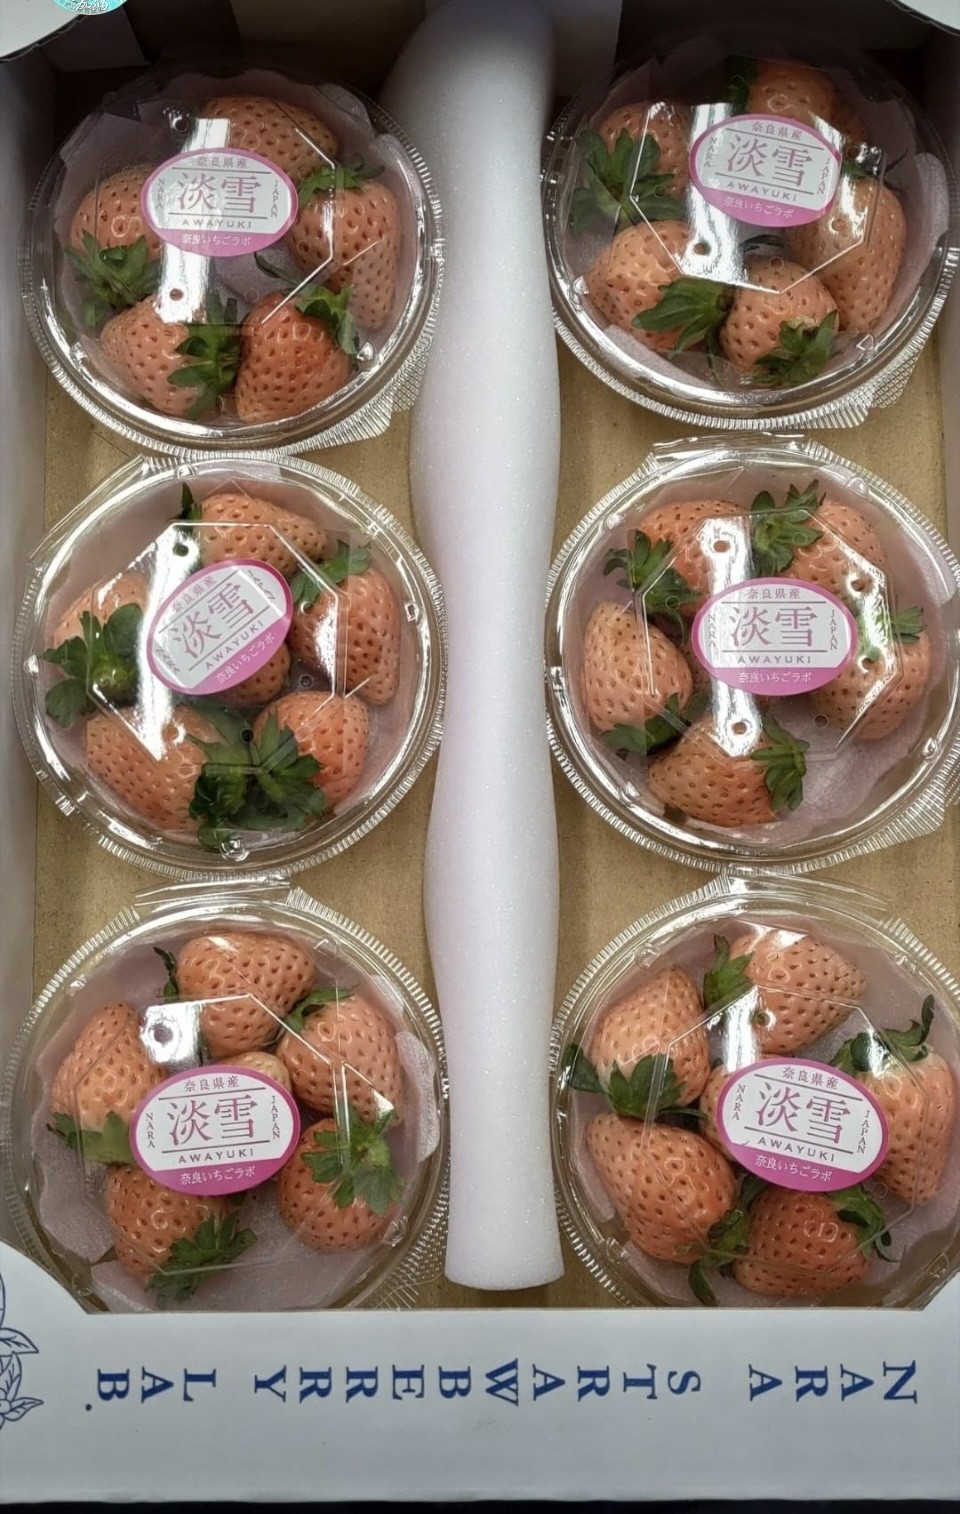 淡雪糖果盒草莓